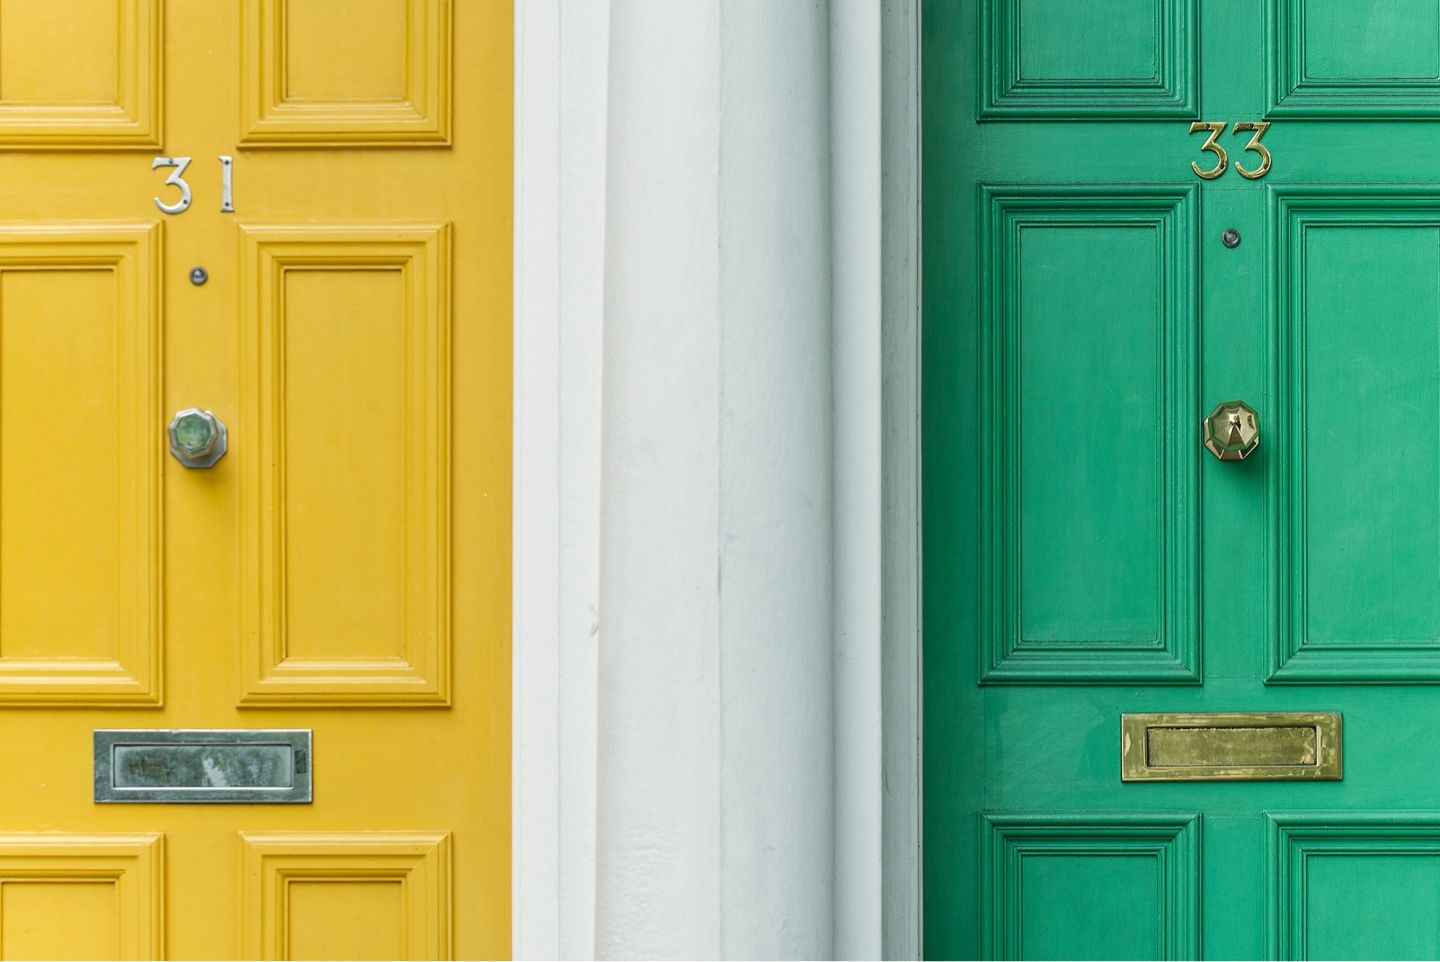 A yellow door and a green door